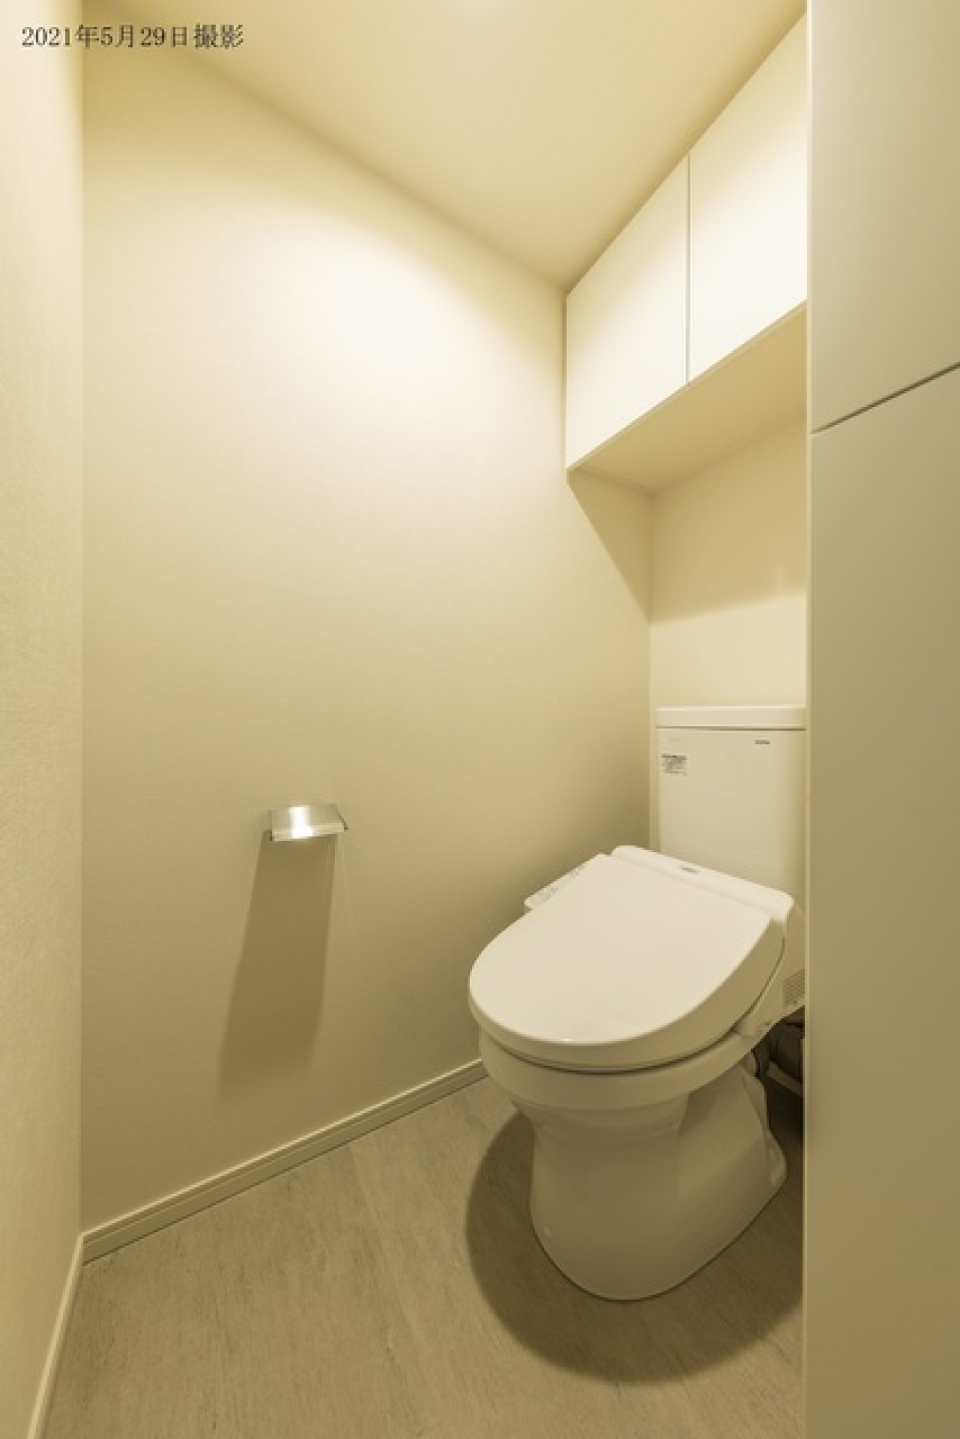 便利な収納棚付きの清潔感のあるトイレです。
※写真は同タイプ住戸です。